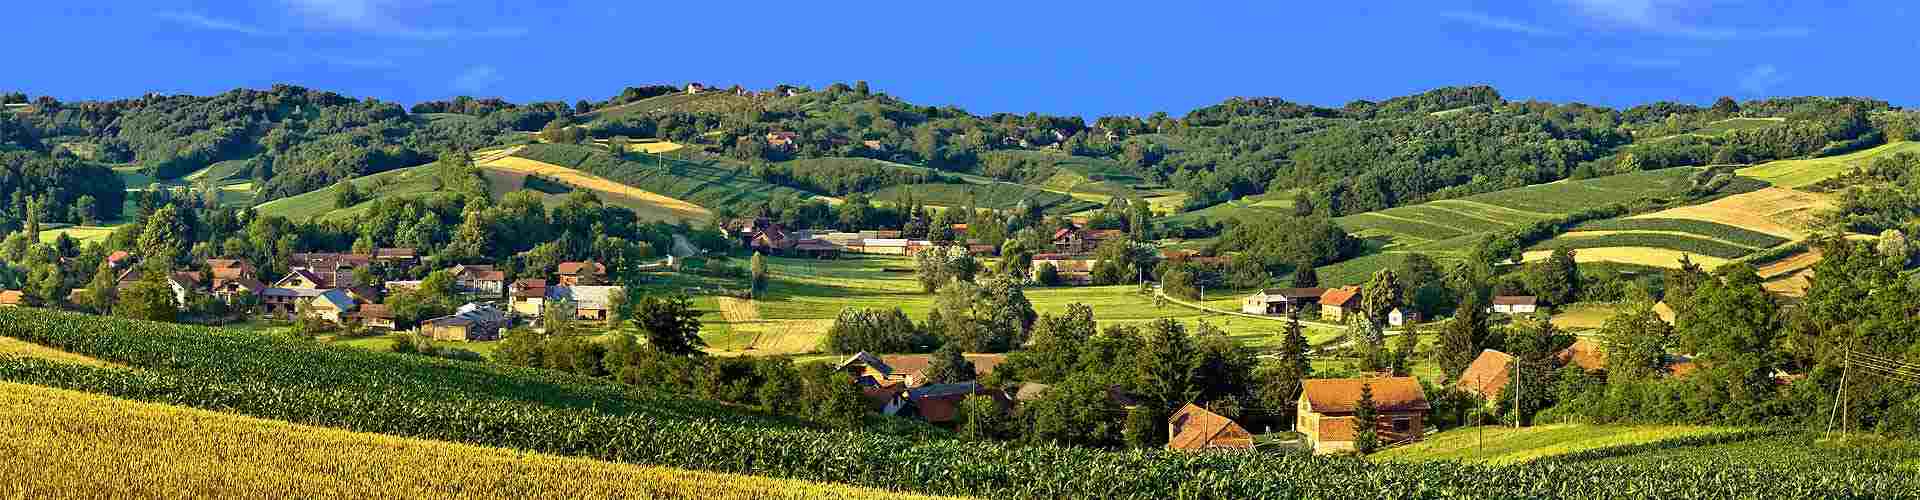 Casas rurales para celebraciones en Castilla - La Mancha
          
          

